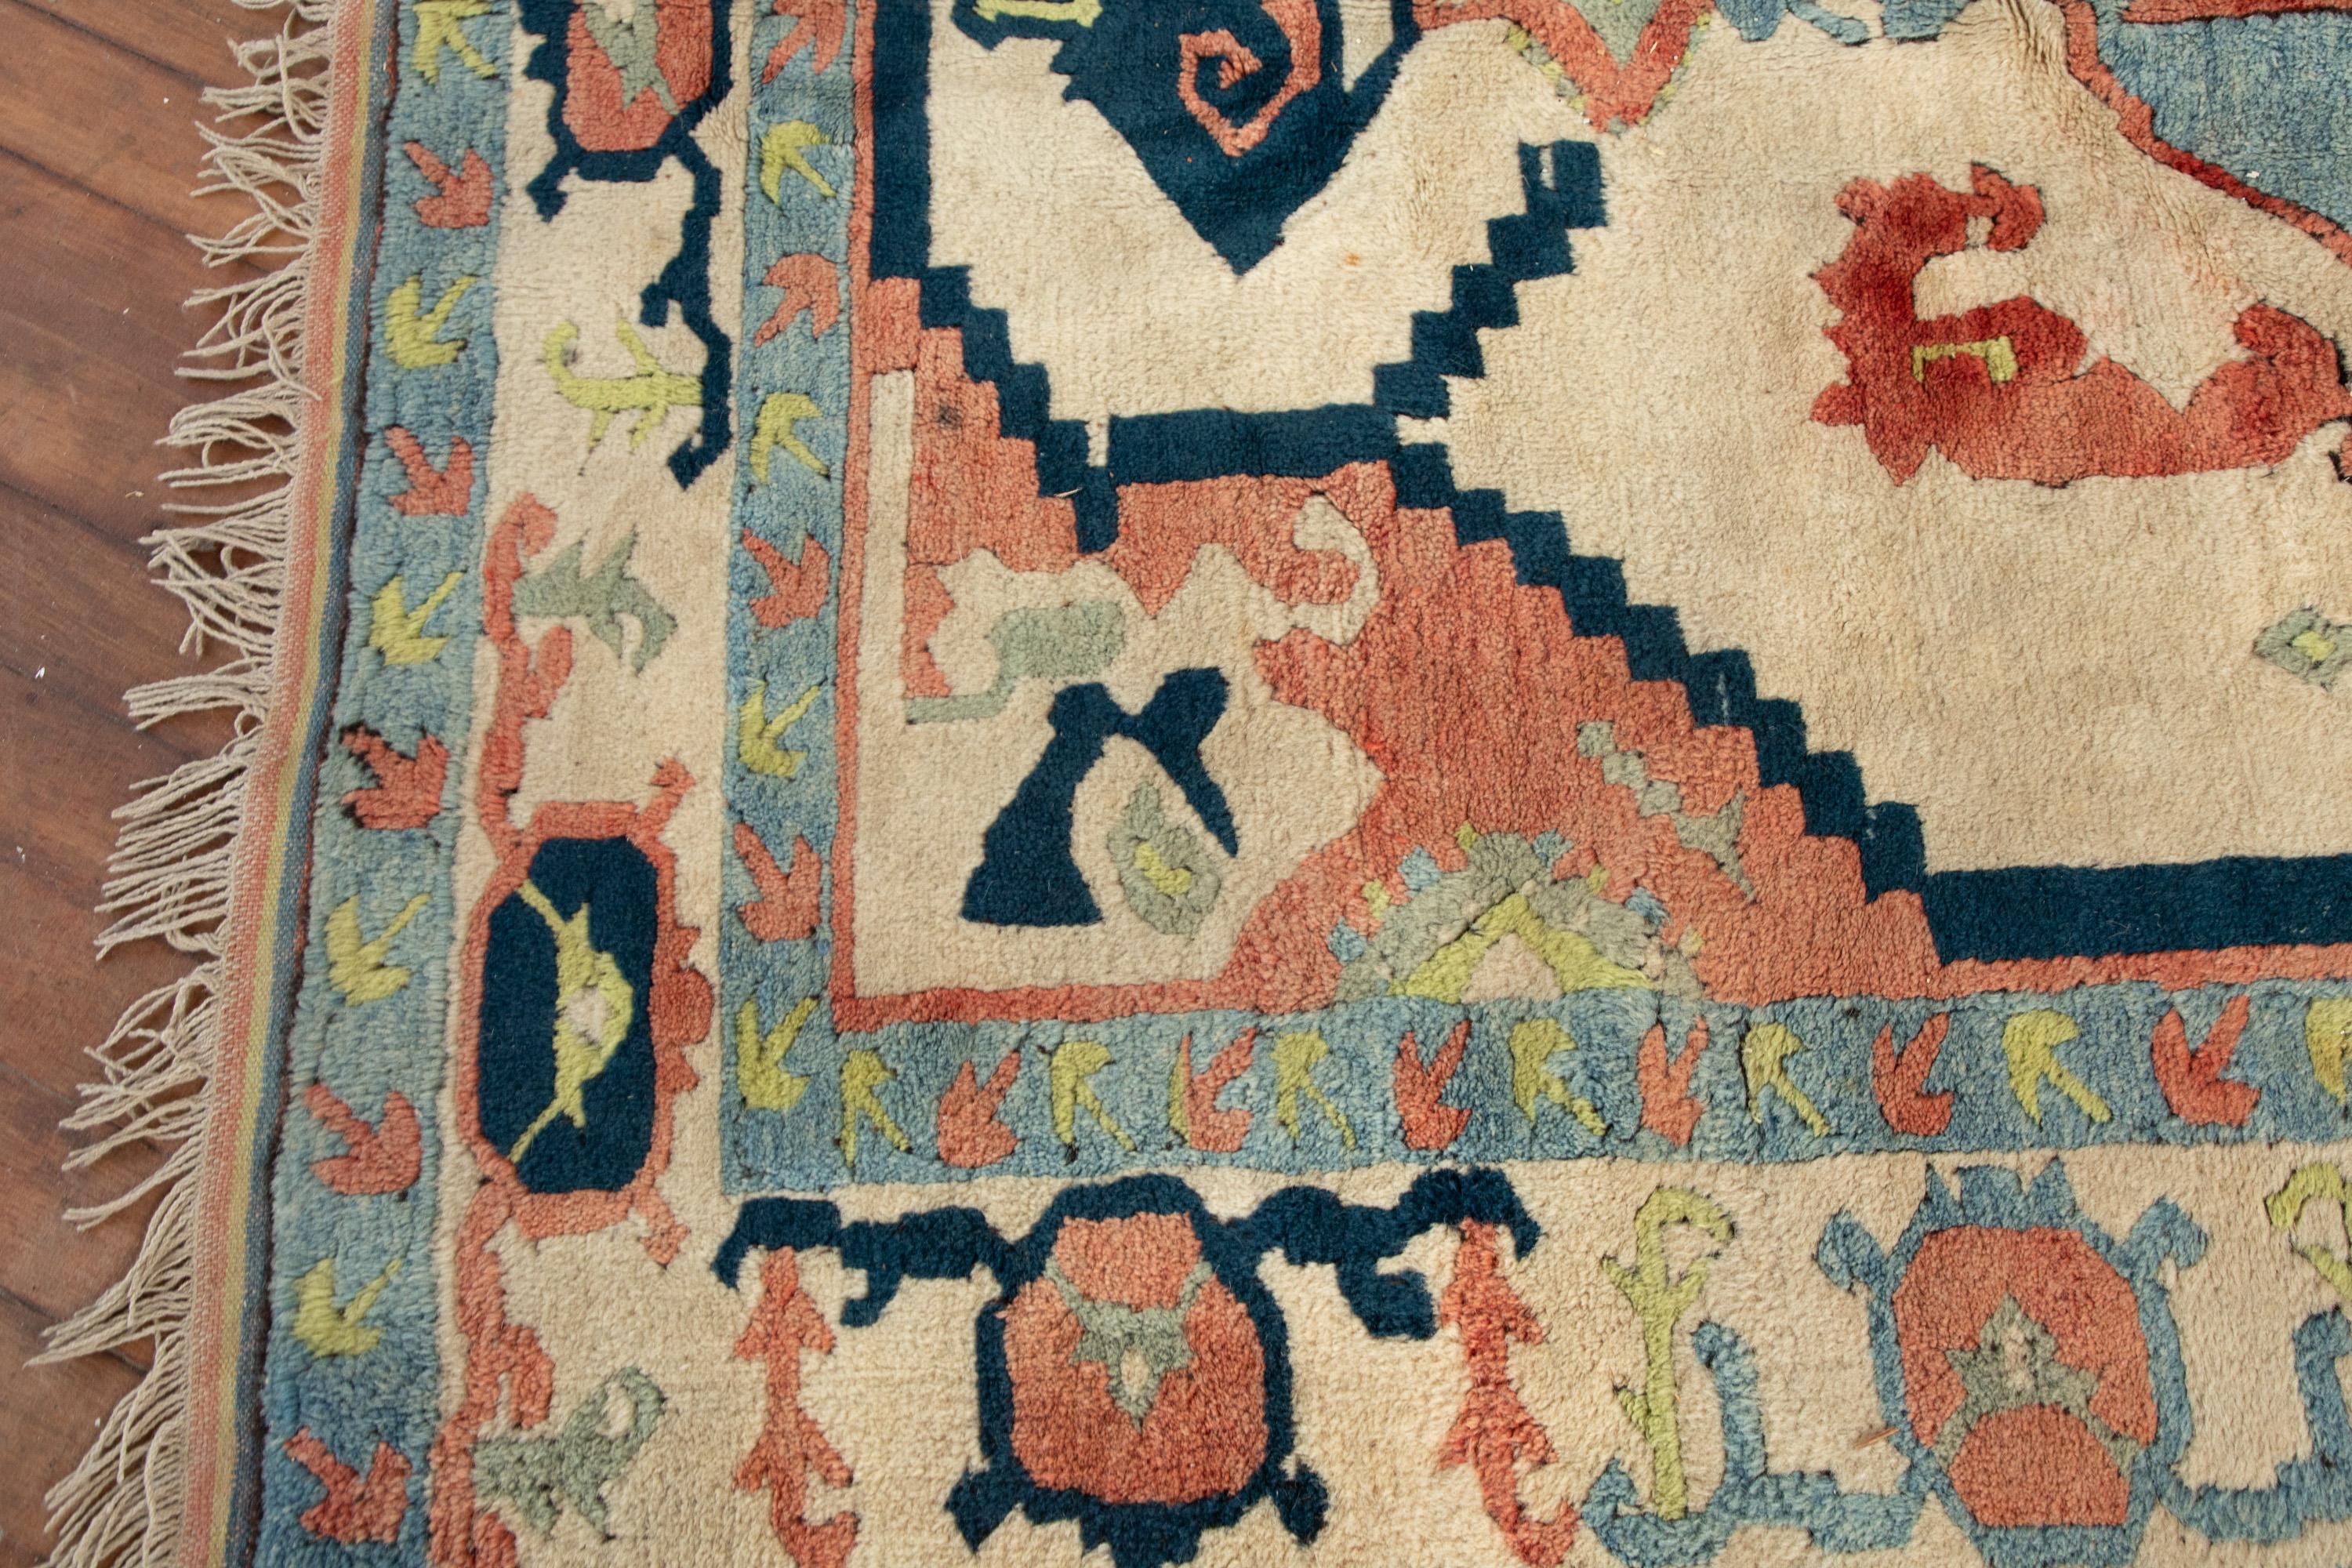 Traditioneller Oushak-Teppich.
Handgeknüpfter Wollteppich mit einem klassischen, farbenfrohen Muster.

Cremefarbener Hintergrund mit einem himmelblauen, marineblauen, lindgrünen und einem erdigen rosa/pfirsichfarbenen Muster. Aufmunternde